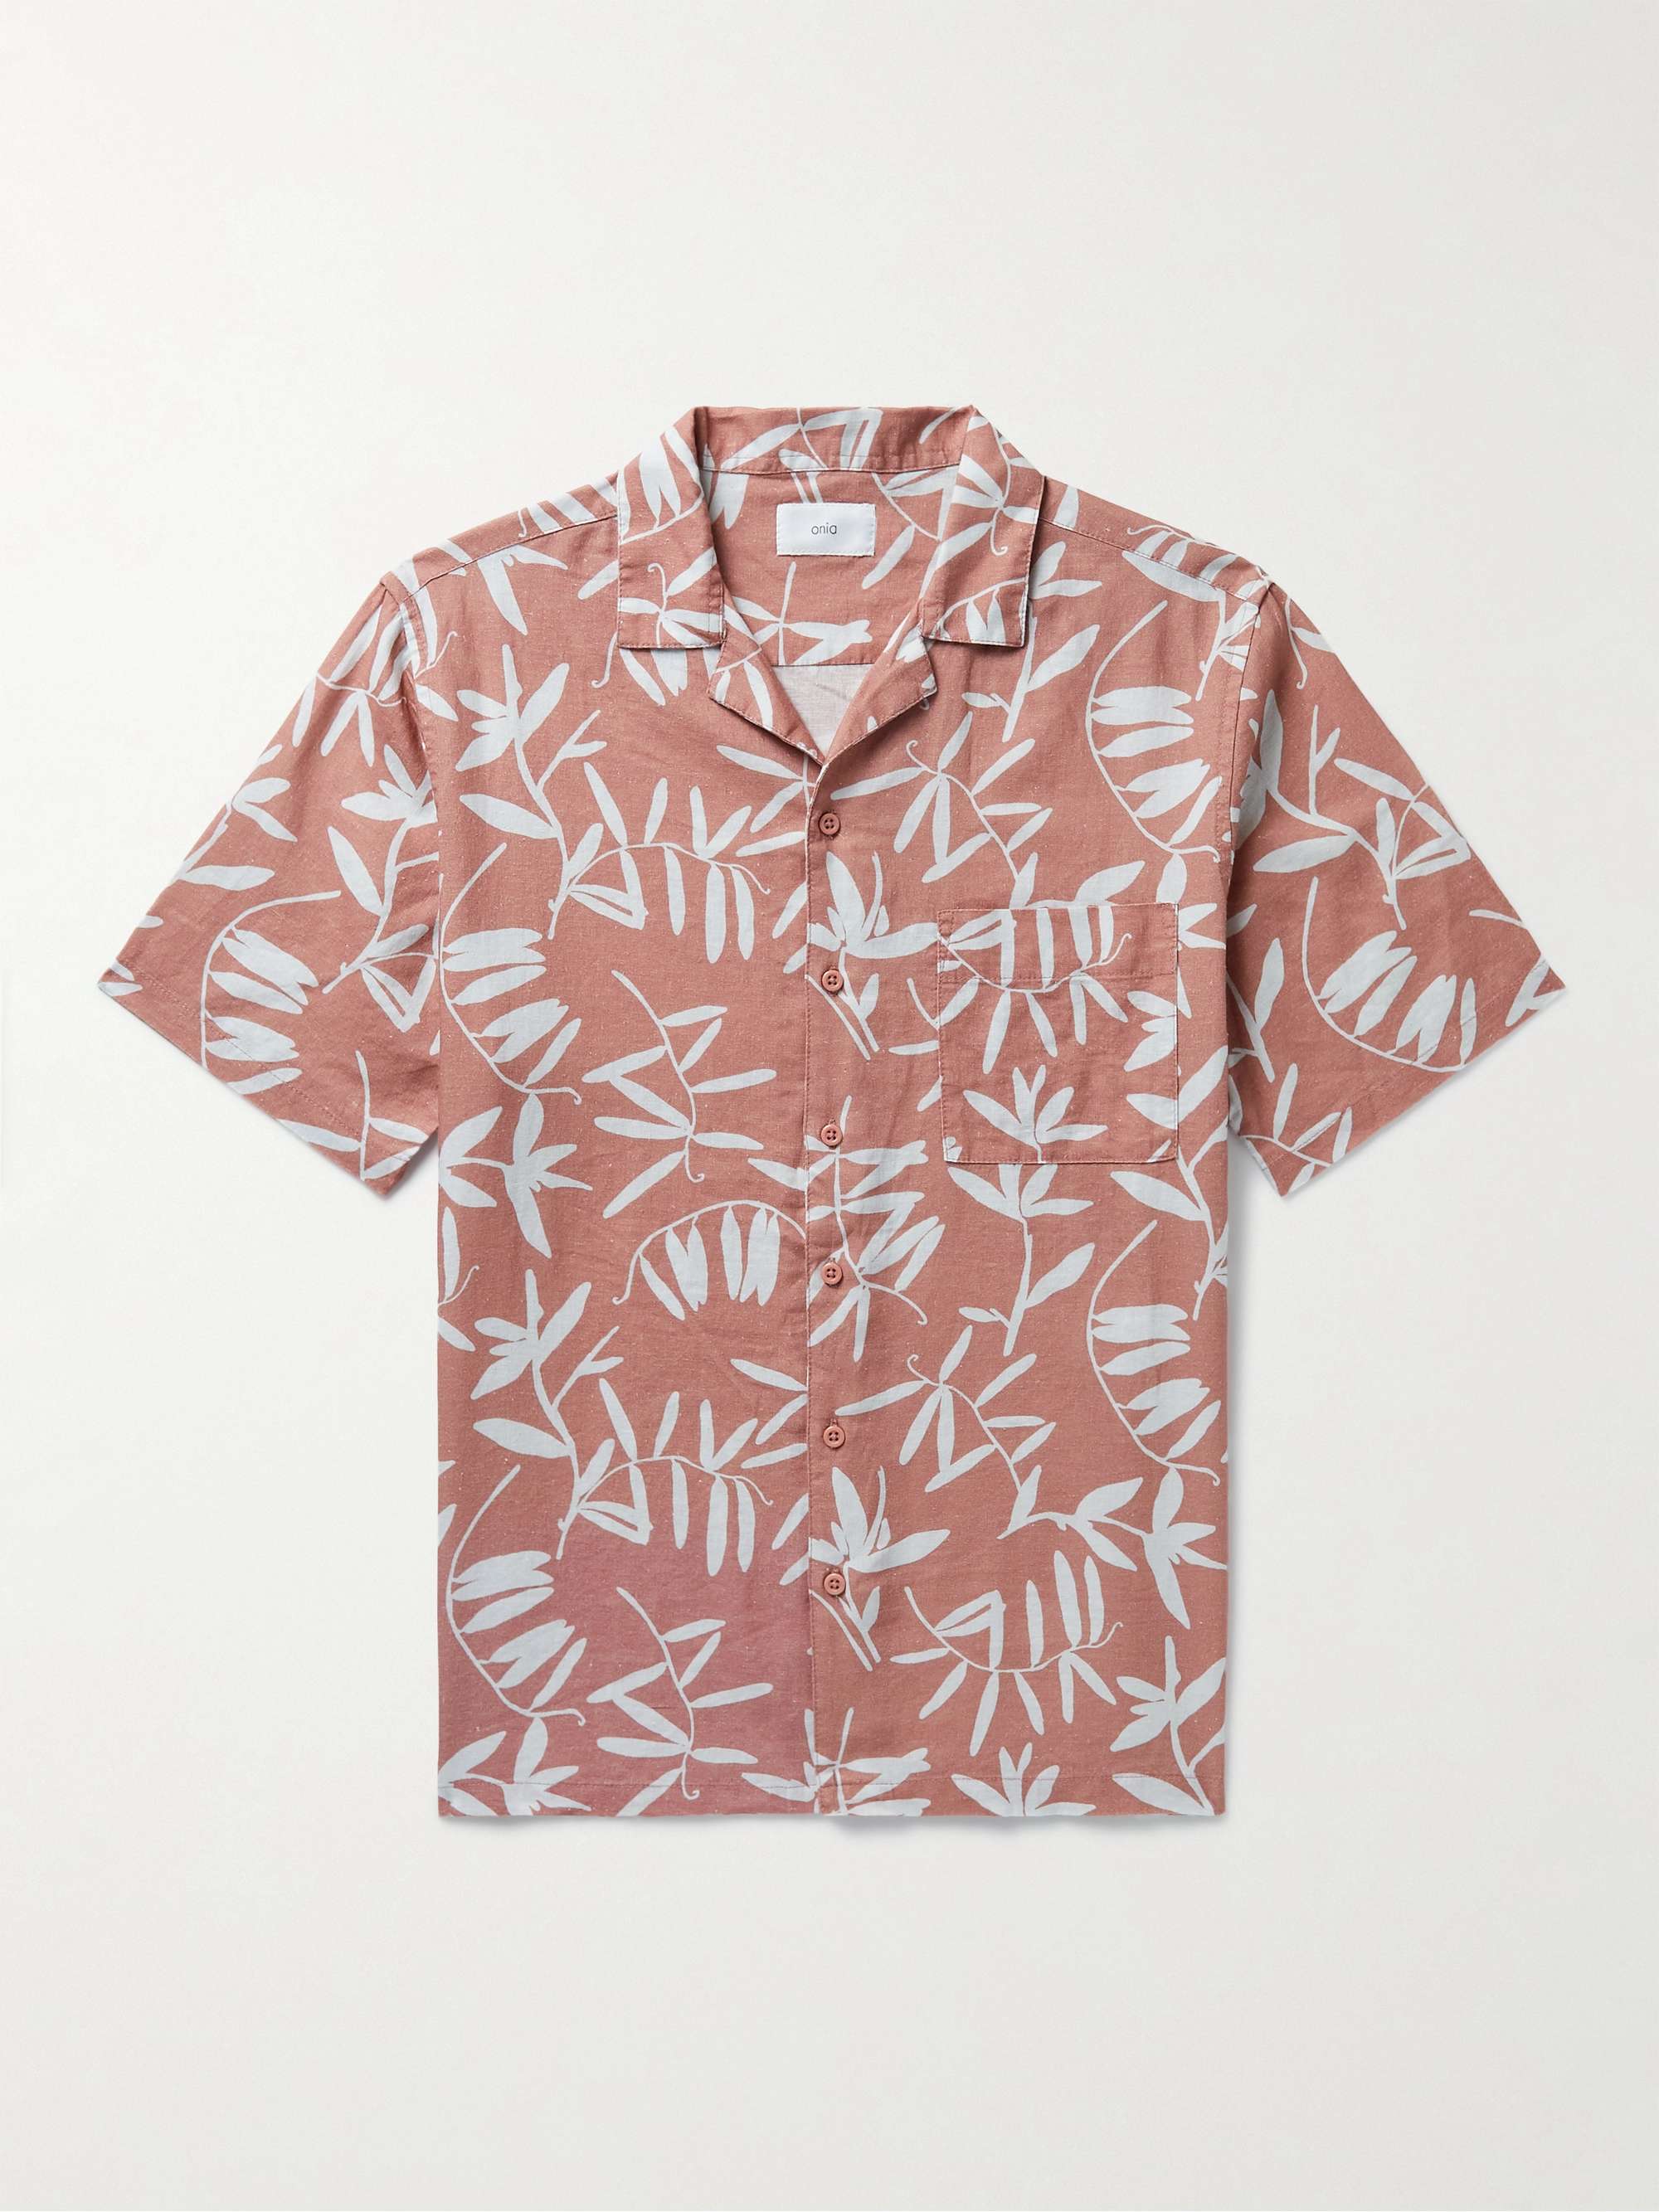 Gucci Men's Hawaiian Vacation Shirt